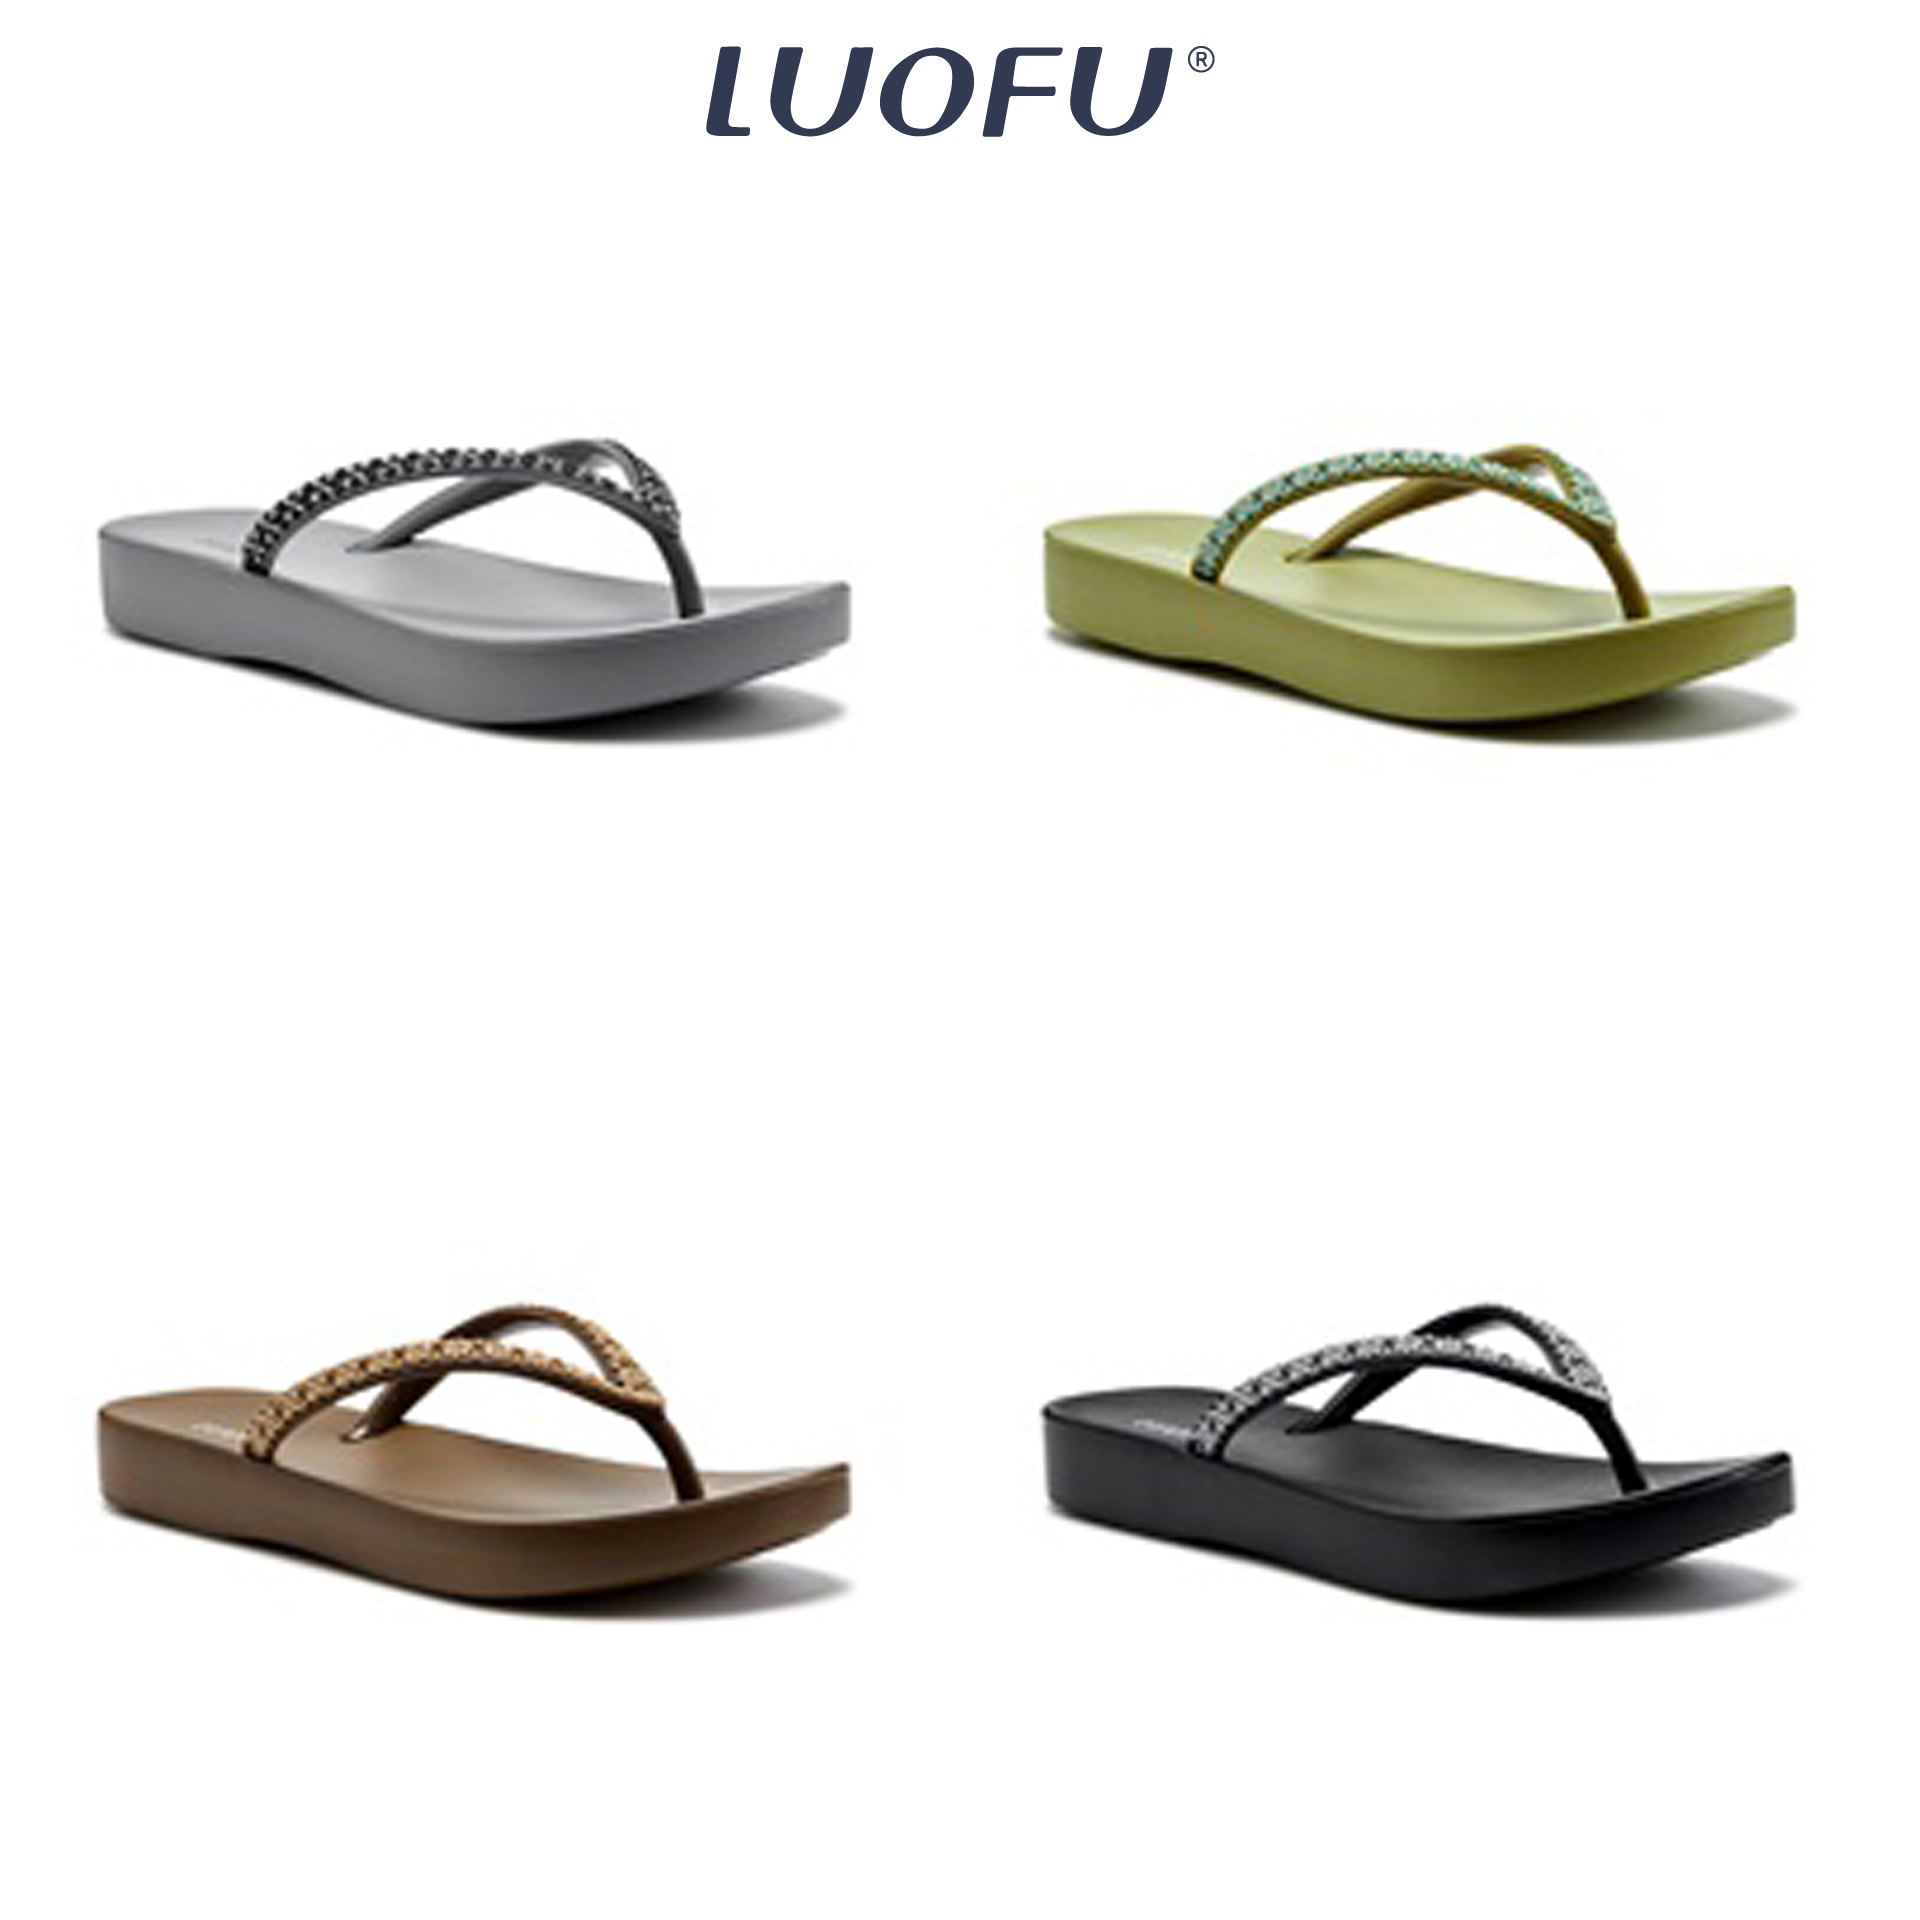 LUOFU รองเท้าแตะ ผู้หญิง รองเท้าหูหนีบ รองเท้าแฟชั่น รองเท้าคีบ เสริมส้น เบอร์ 36-40 รหัสE7140-9